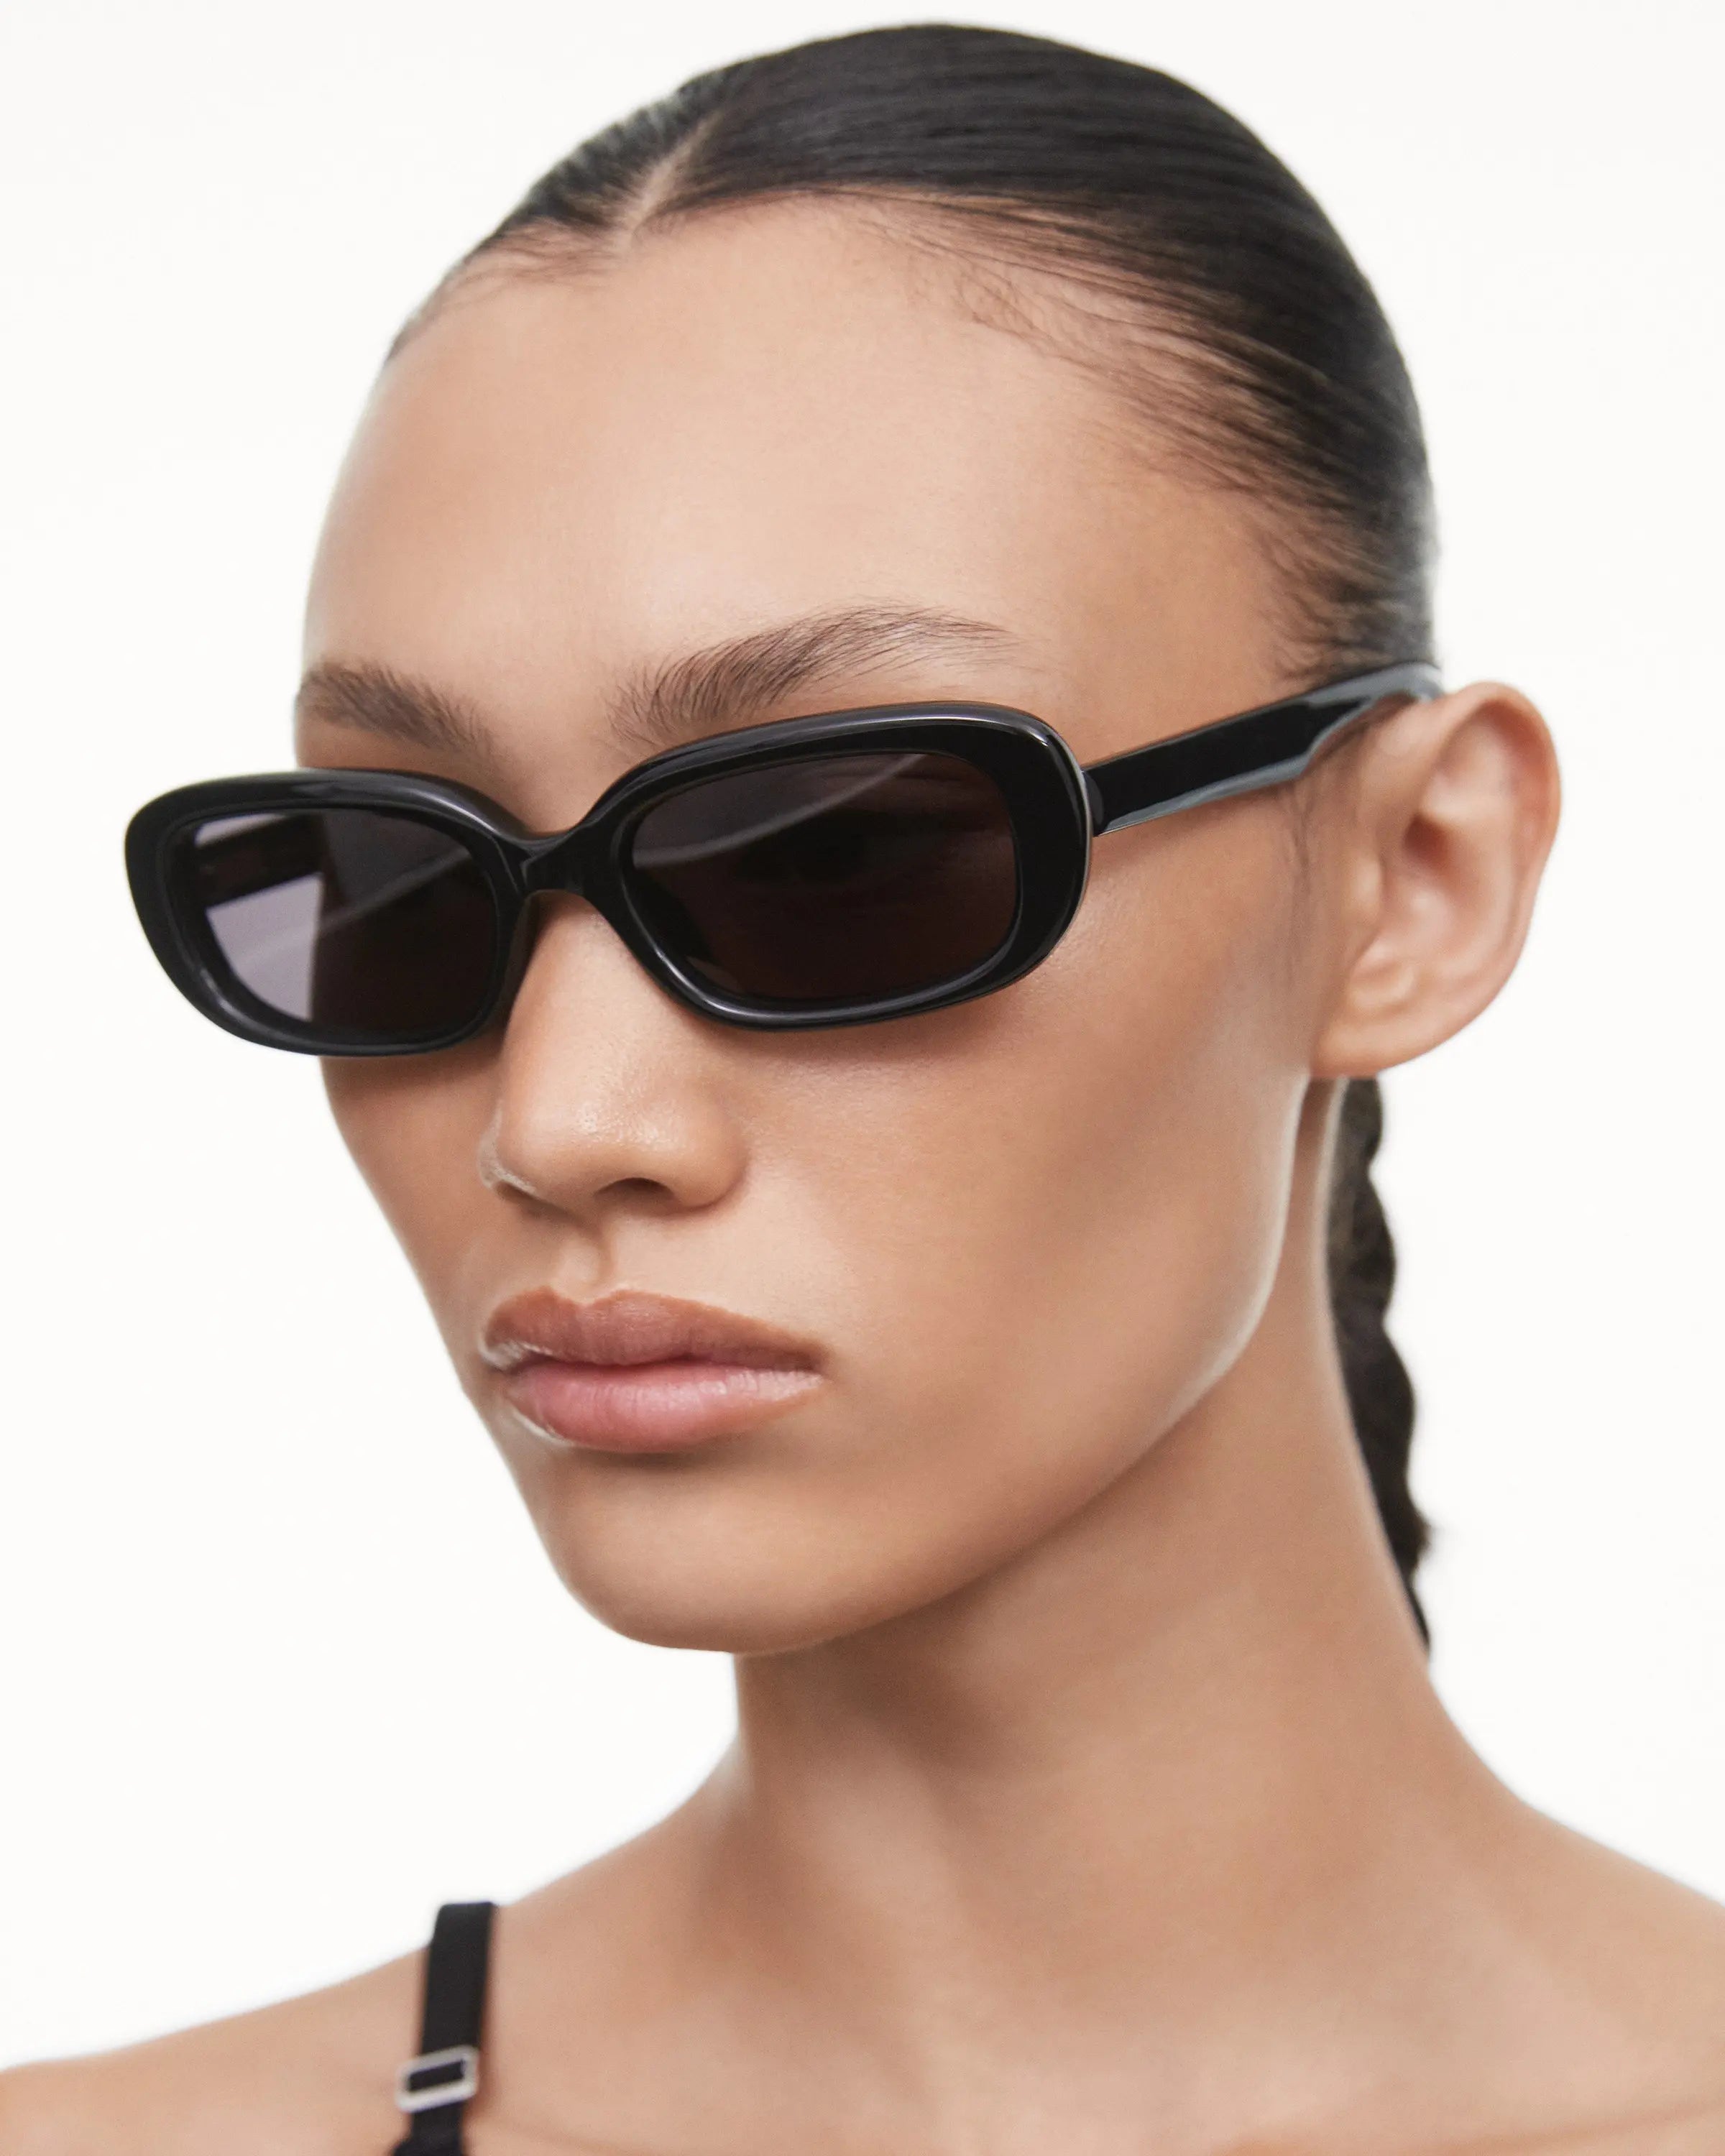 Black rectangular framed sunglasses